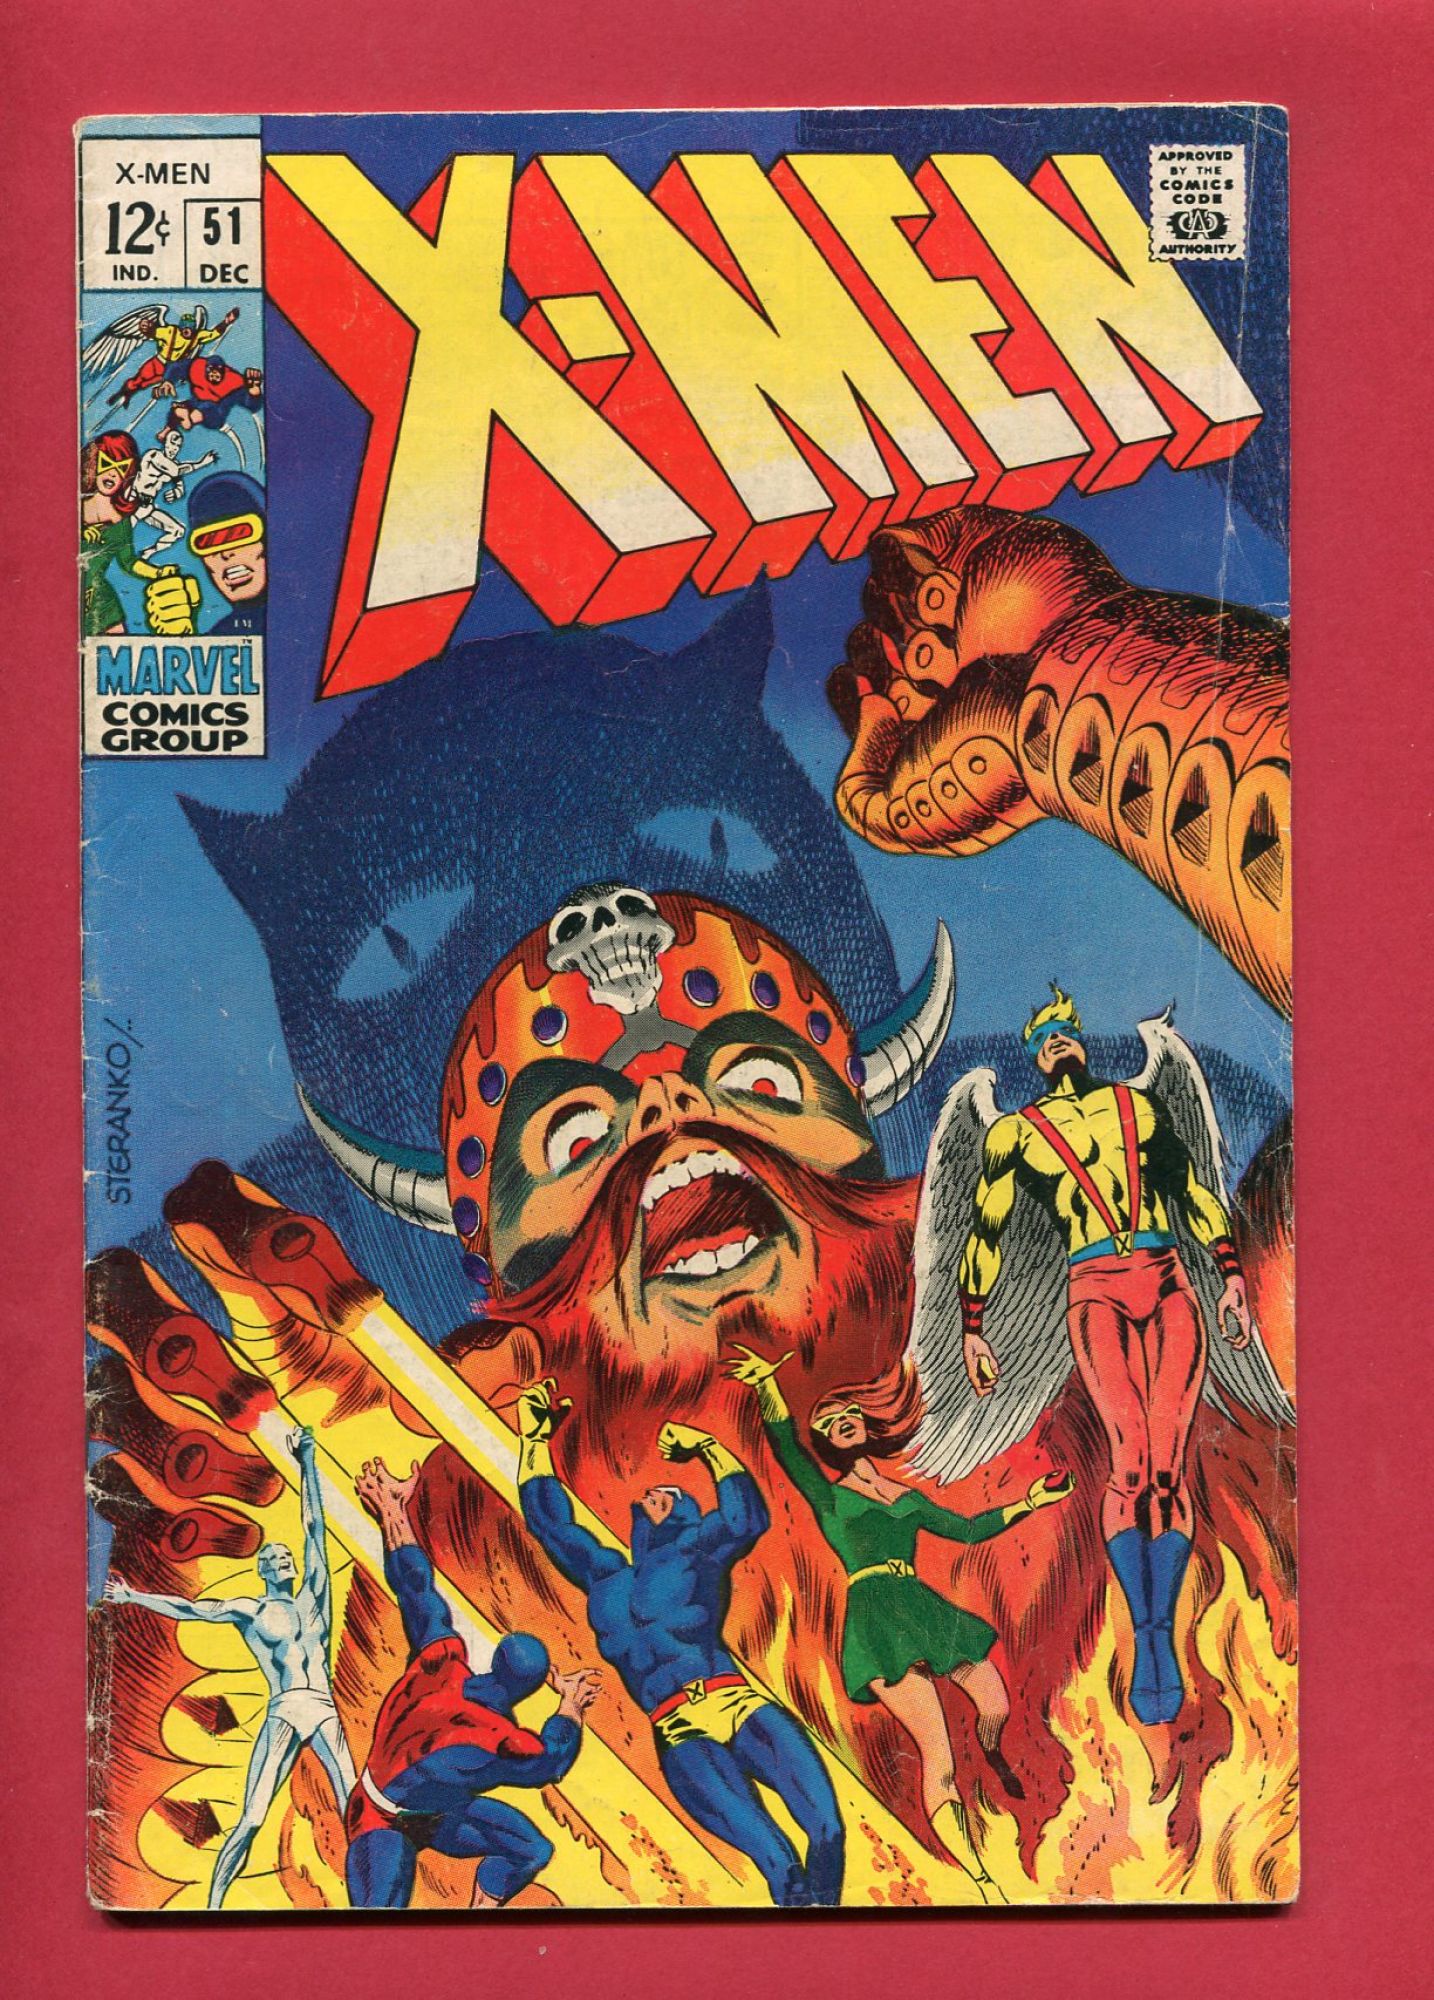 X-Men #51, Dec 1968, 4.5 VG+